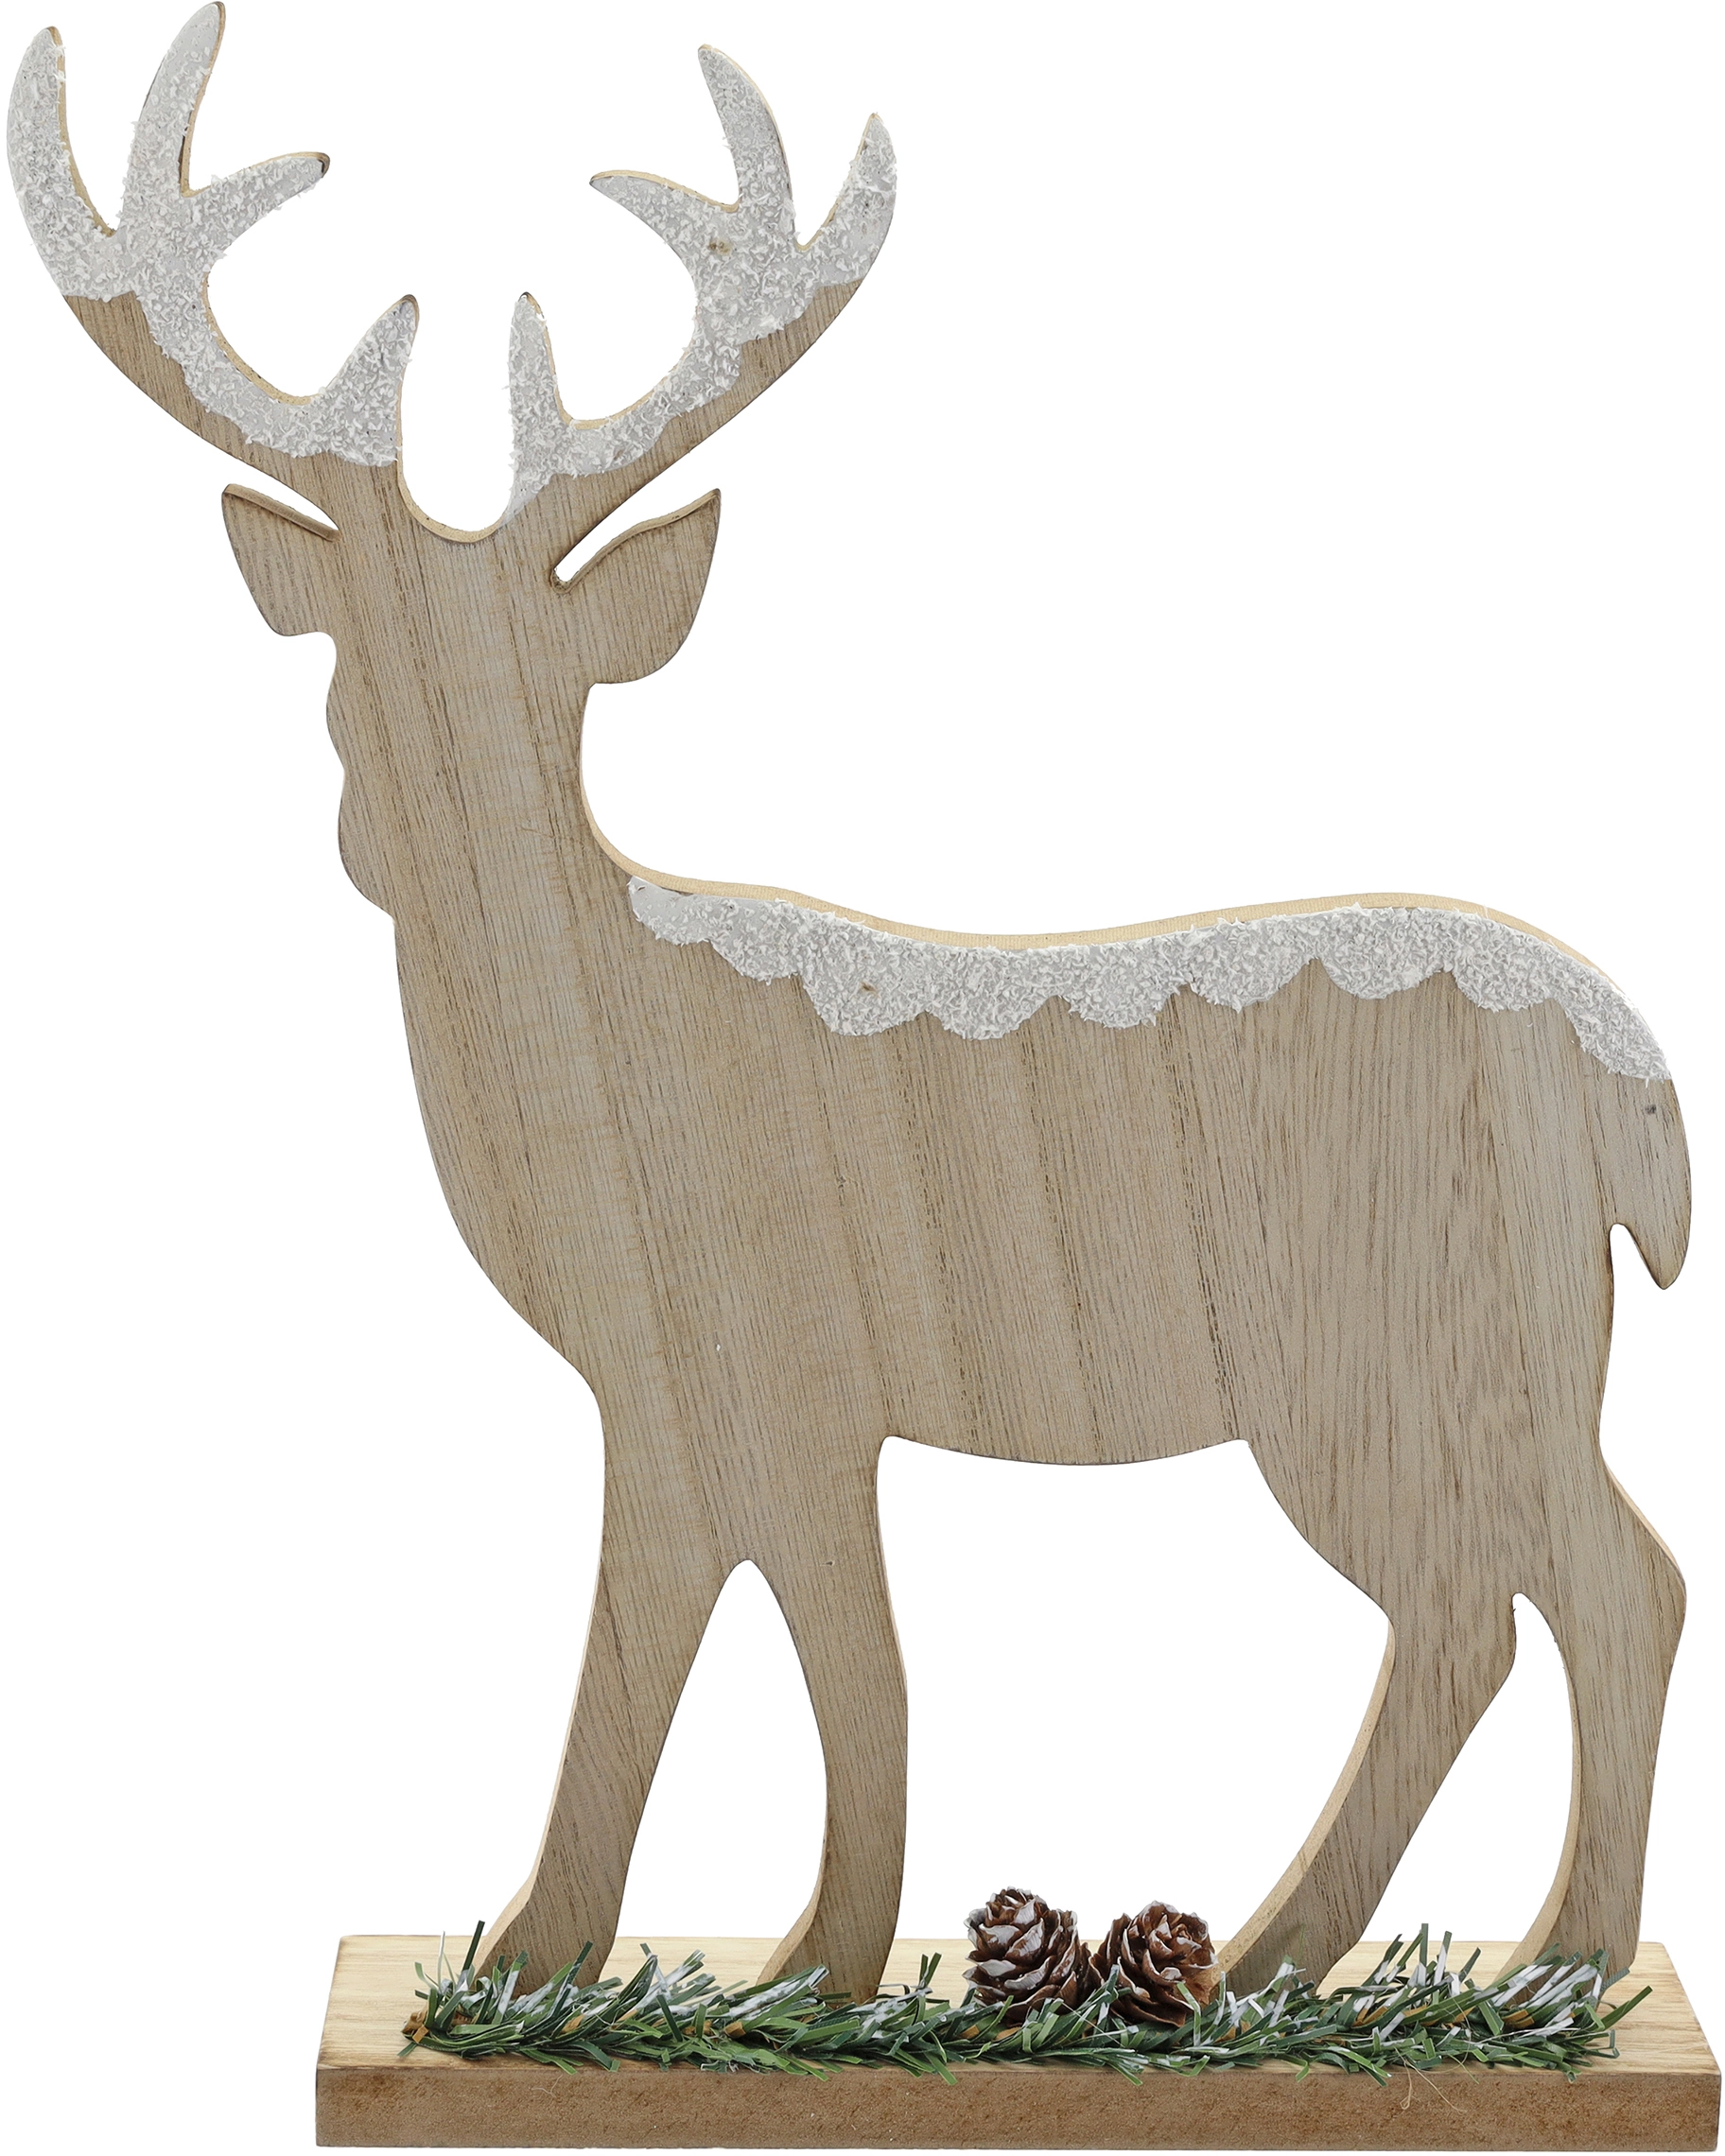 Weihnachtliches Dekoelement Hirsch bei Holz kaufen x Natur aus OBI cm cm 24 30